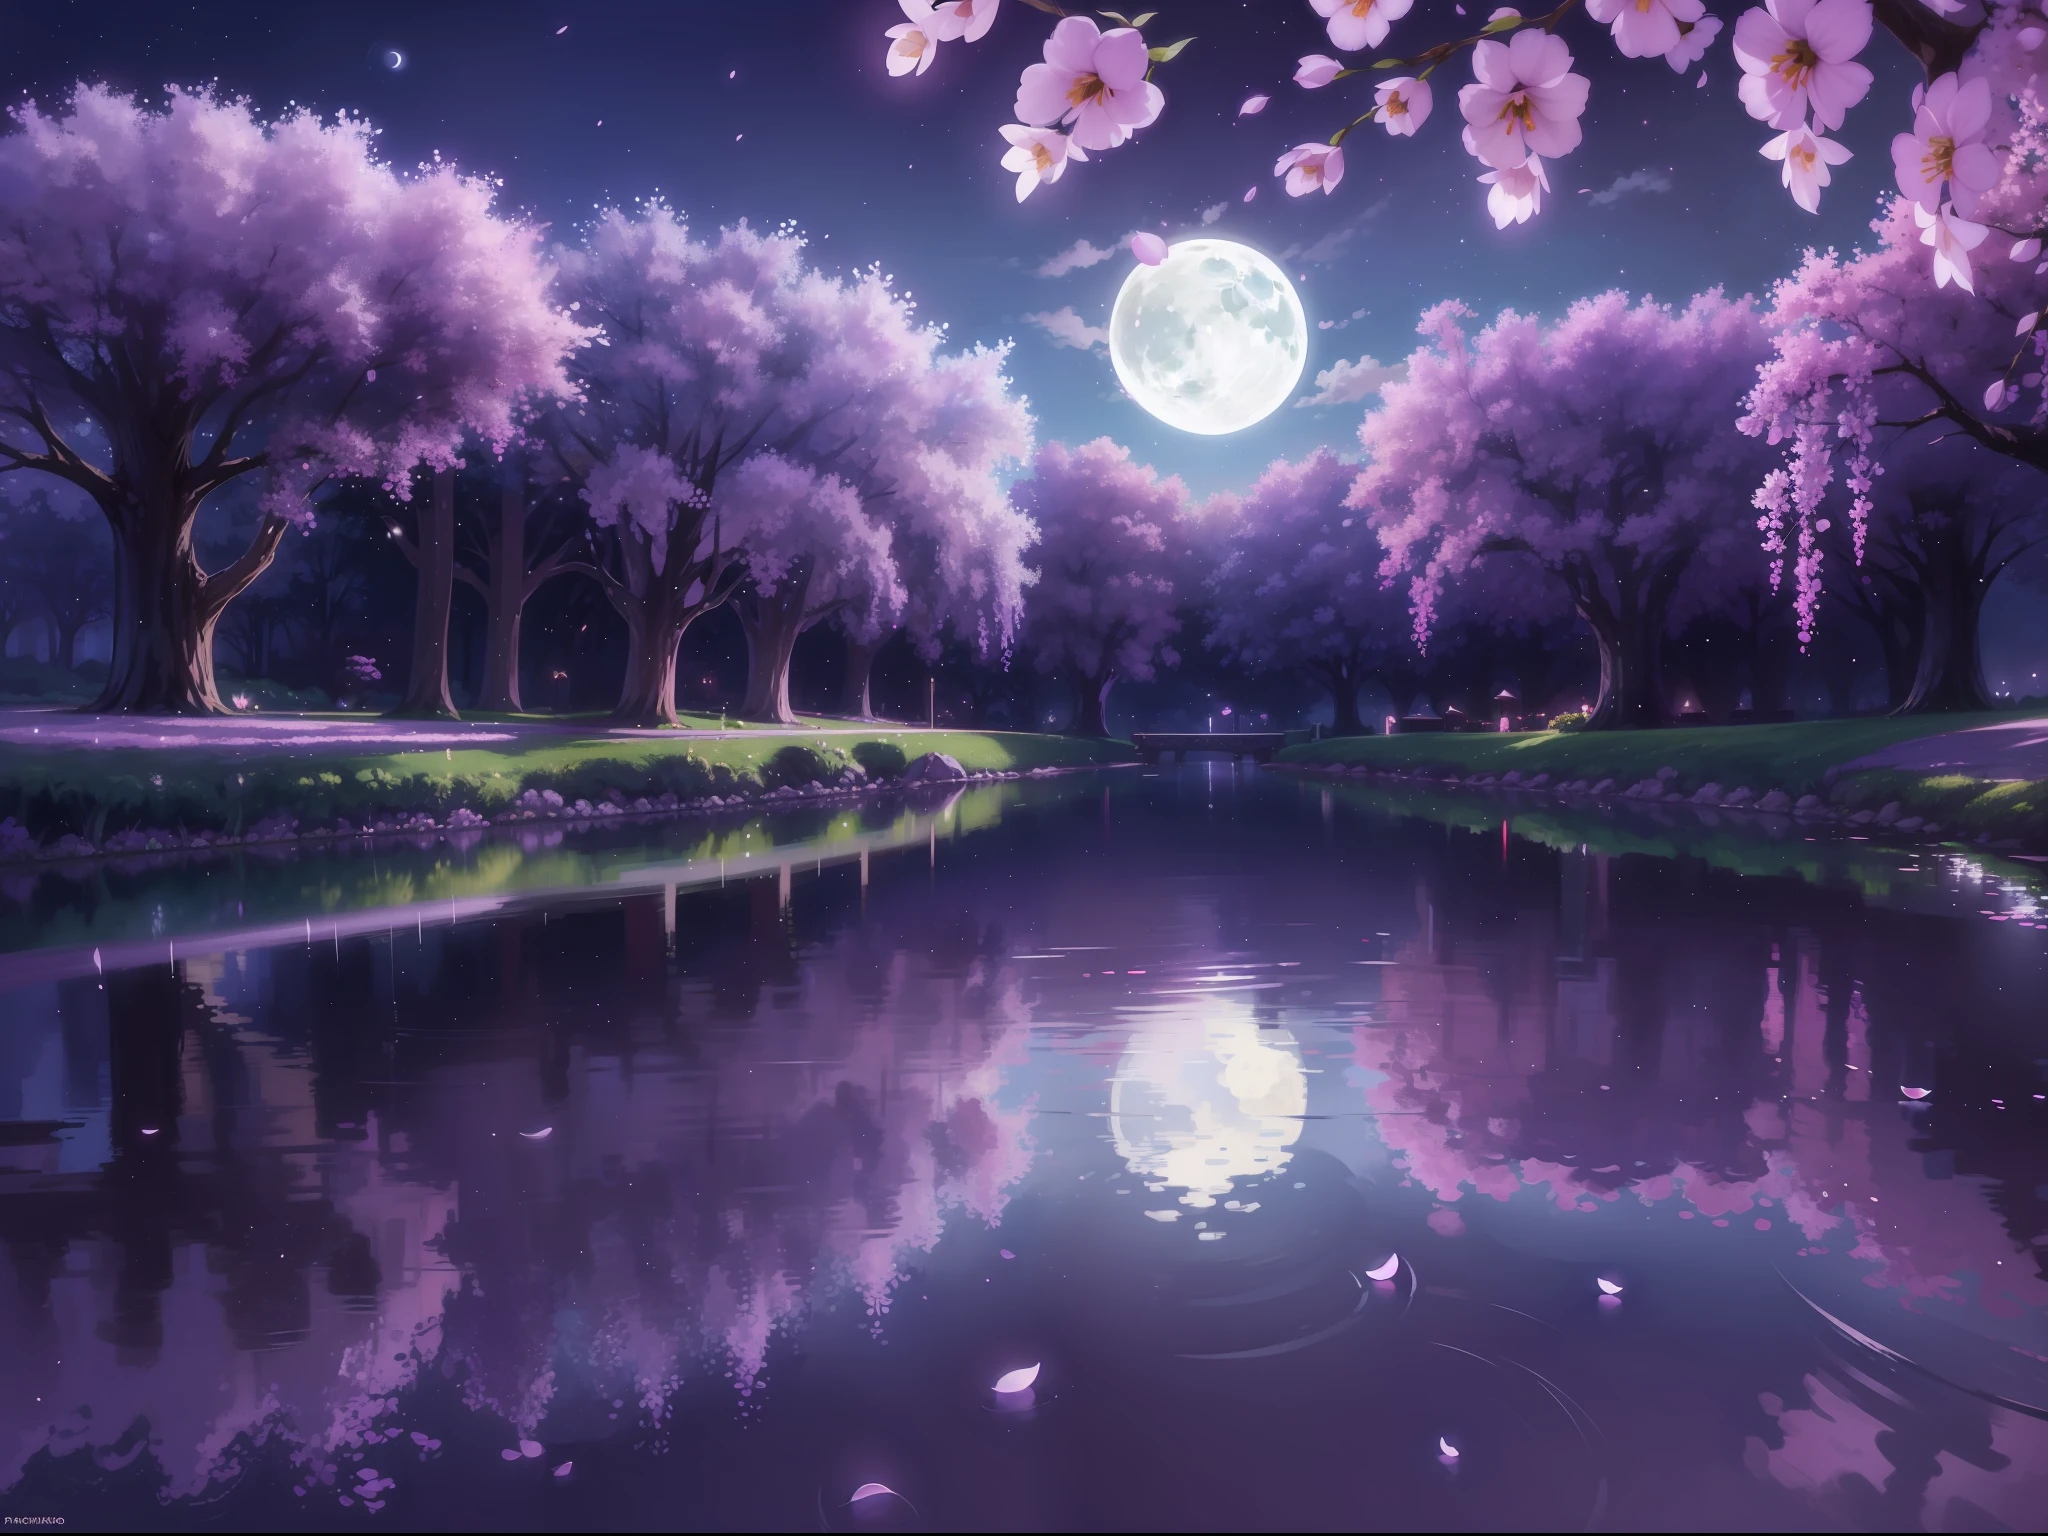 背景, CG, プノン, 夜, 月, 藤, 桜の花, 片側は空、もう一方は池, パノラマ, レイトレーシング, 反射光, 正反対, 8k, 傑作, 最高品質, 高品質, 細部までこだわった, 超詳細, 高解像度, 超高解像度